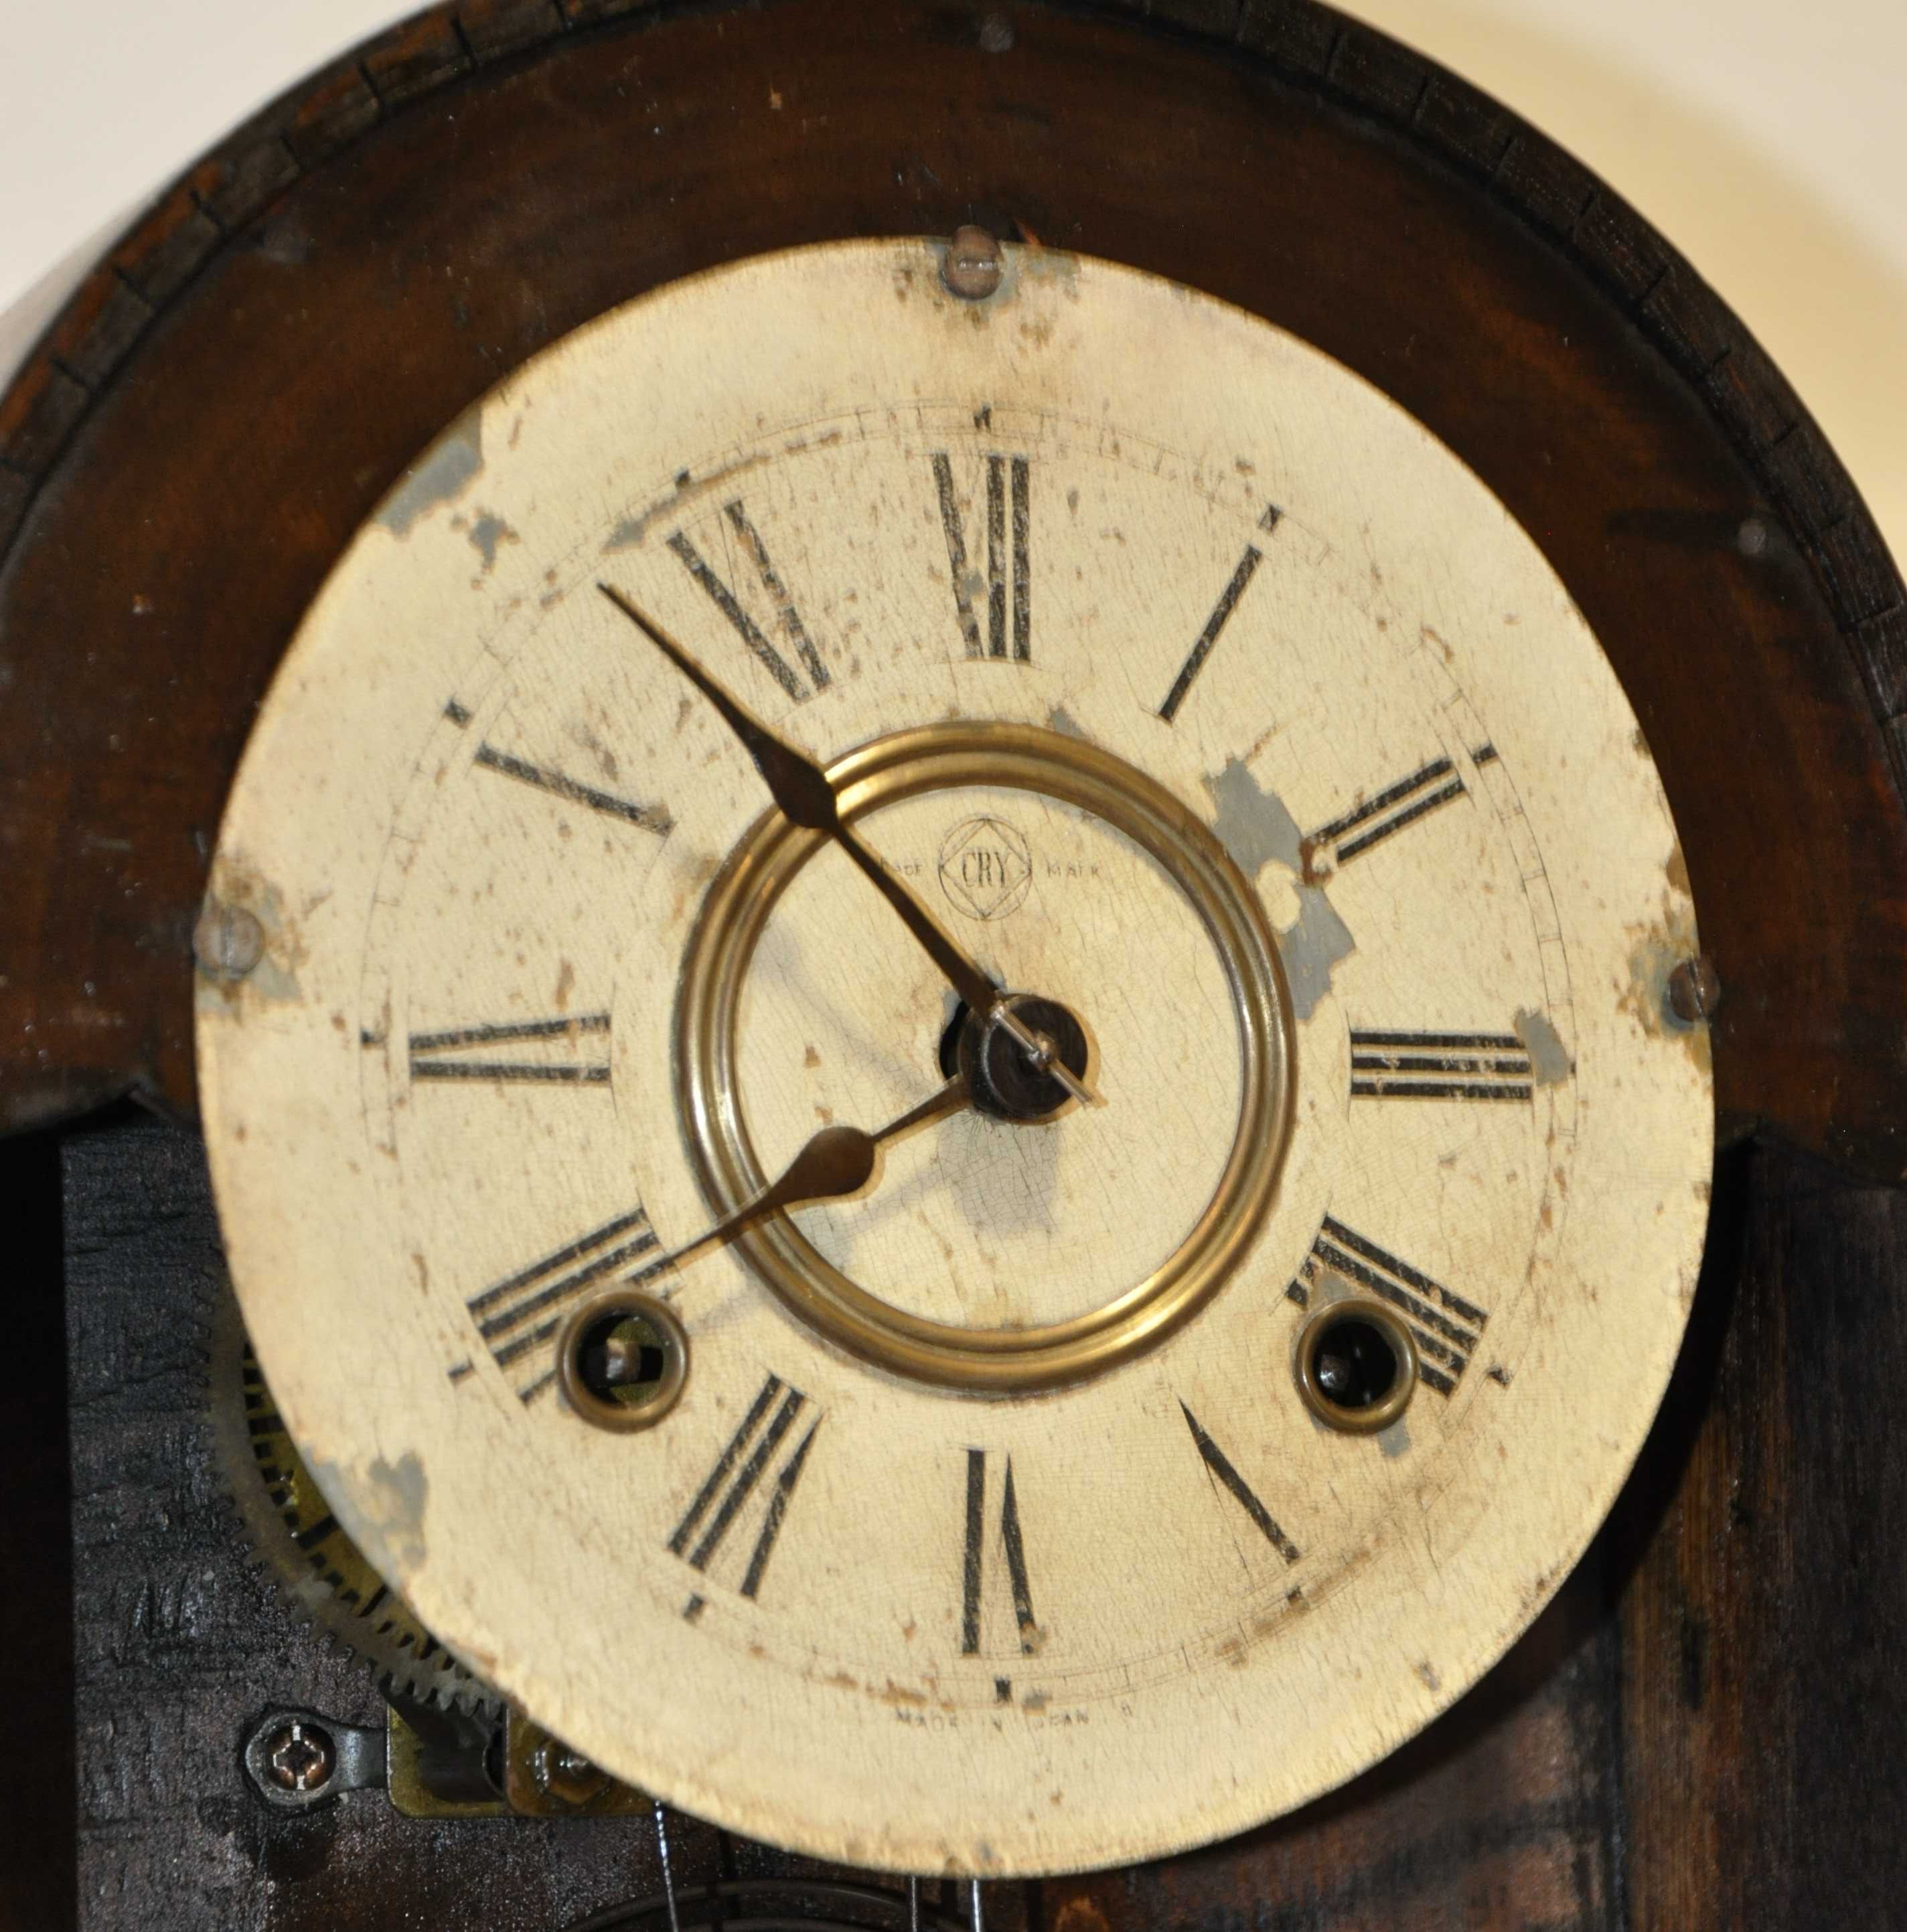 Ceas de semineu/birou cu pendula anii 1840